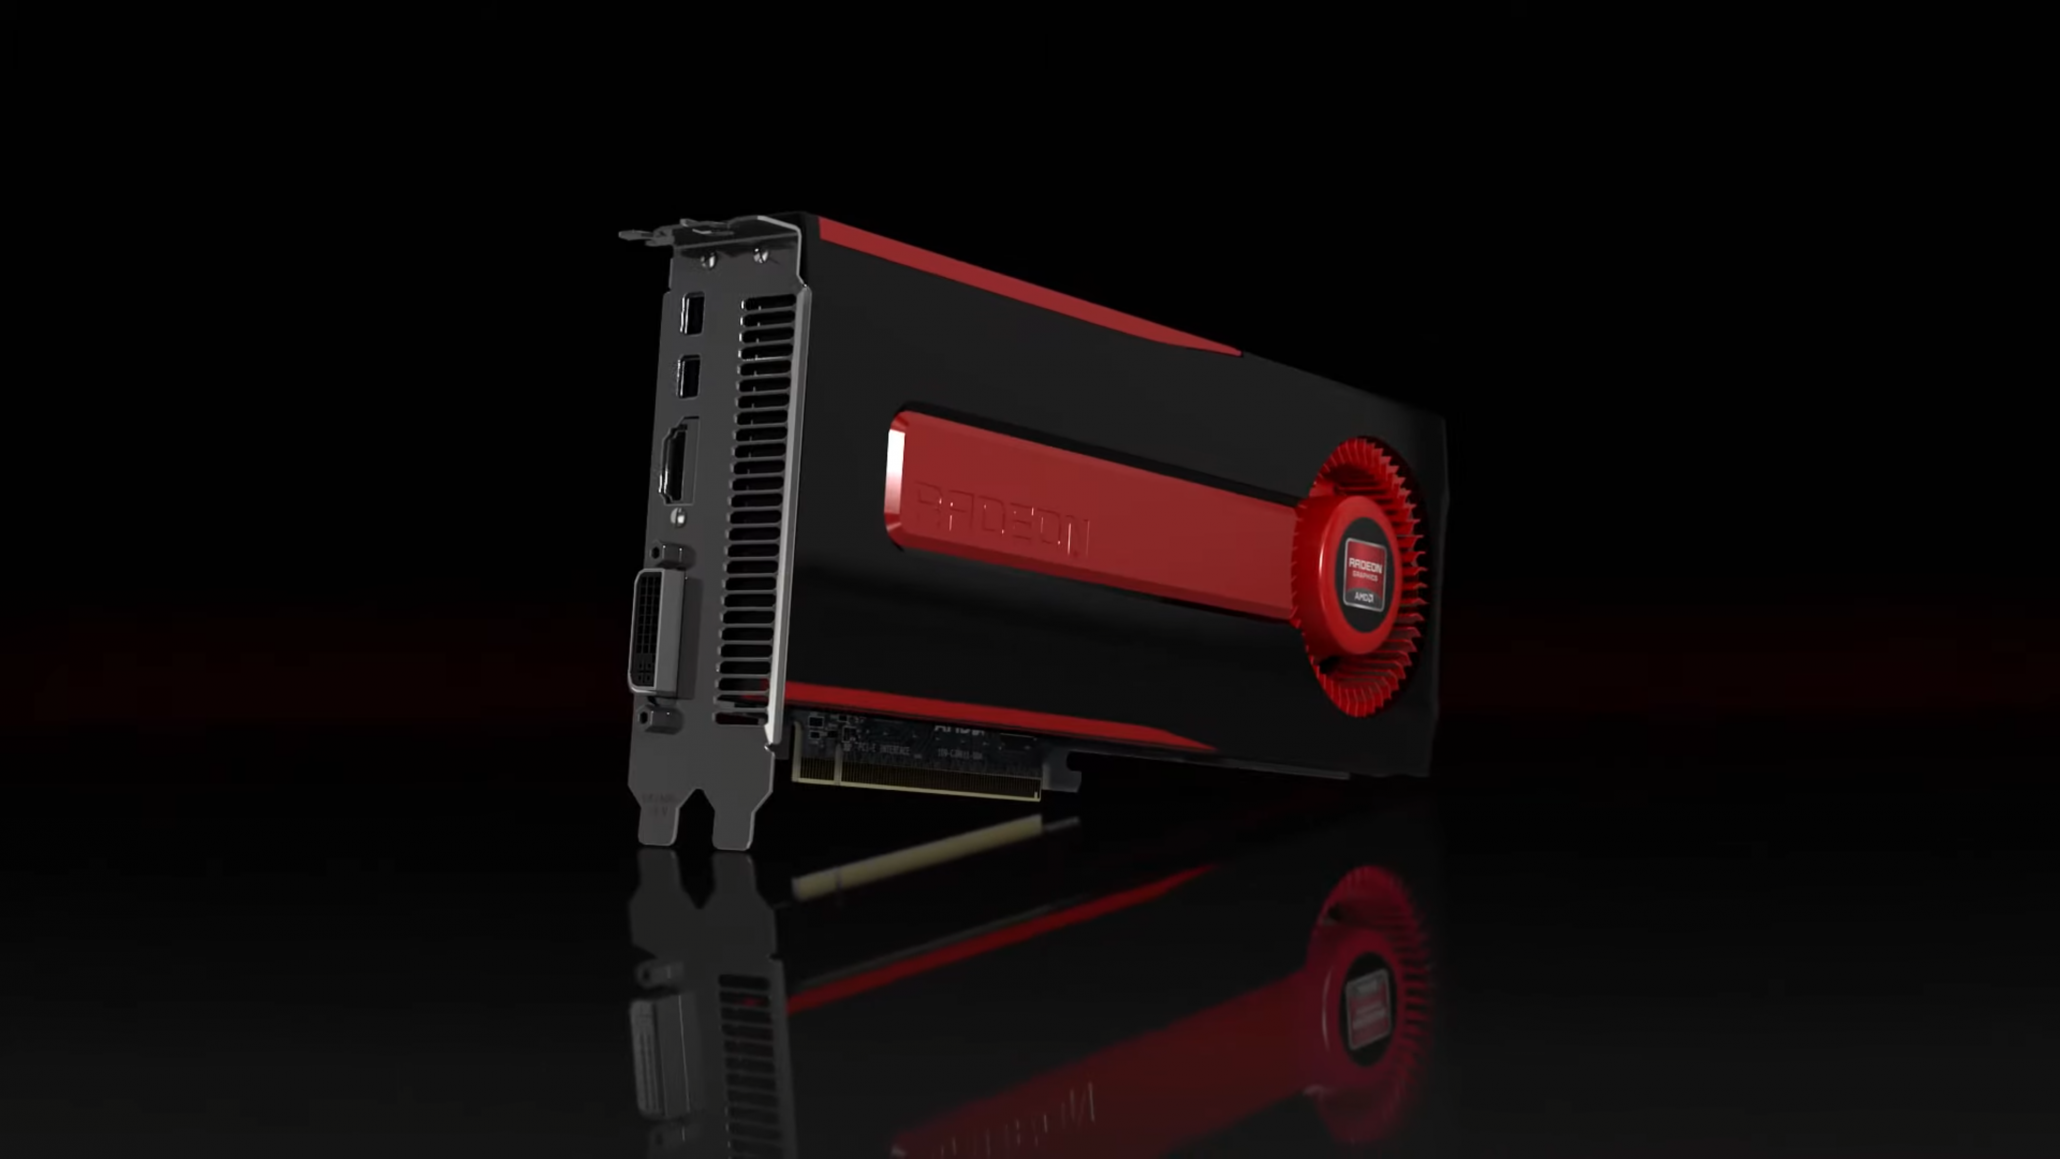 AMD Radeon HD 7970 cuối cùng cũng đã được nhận được bản cập nhật driver đồ hoạ WHQL Adrenalin 22.6.1